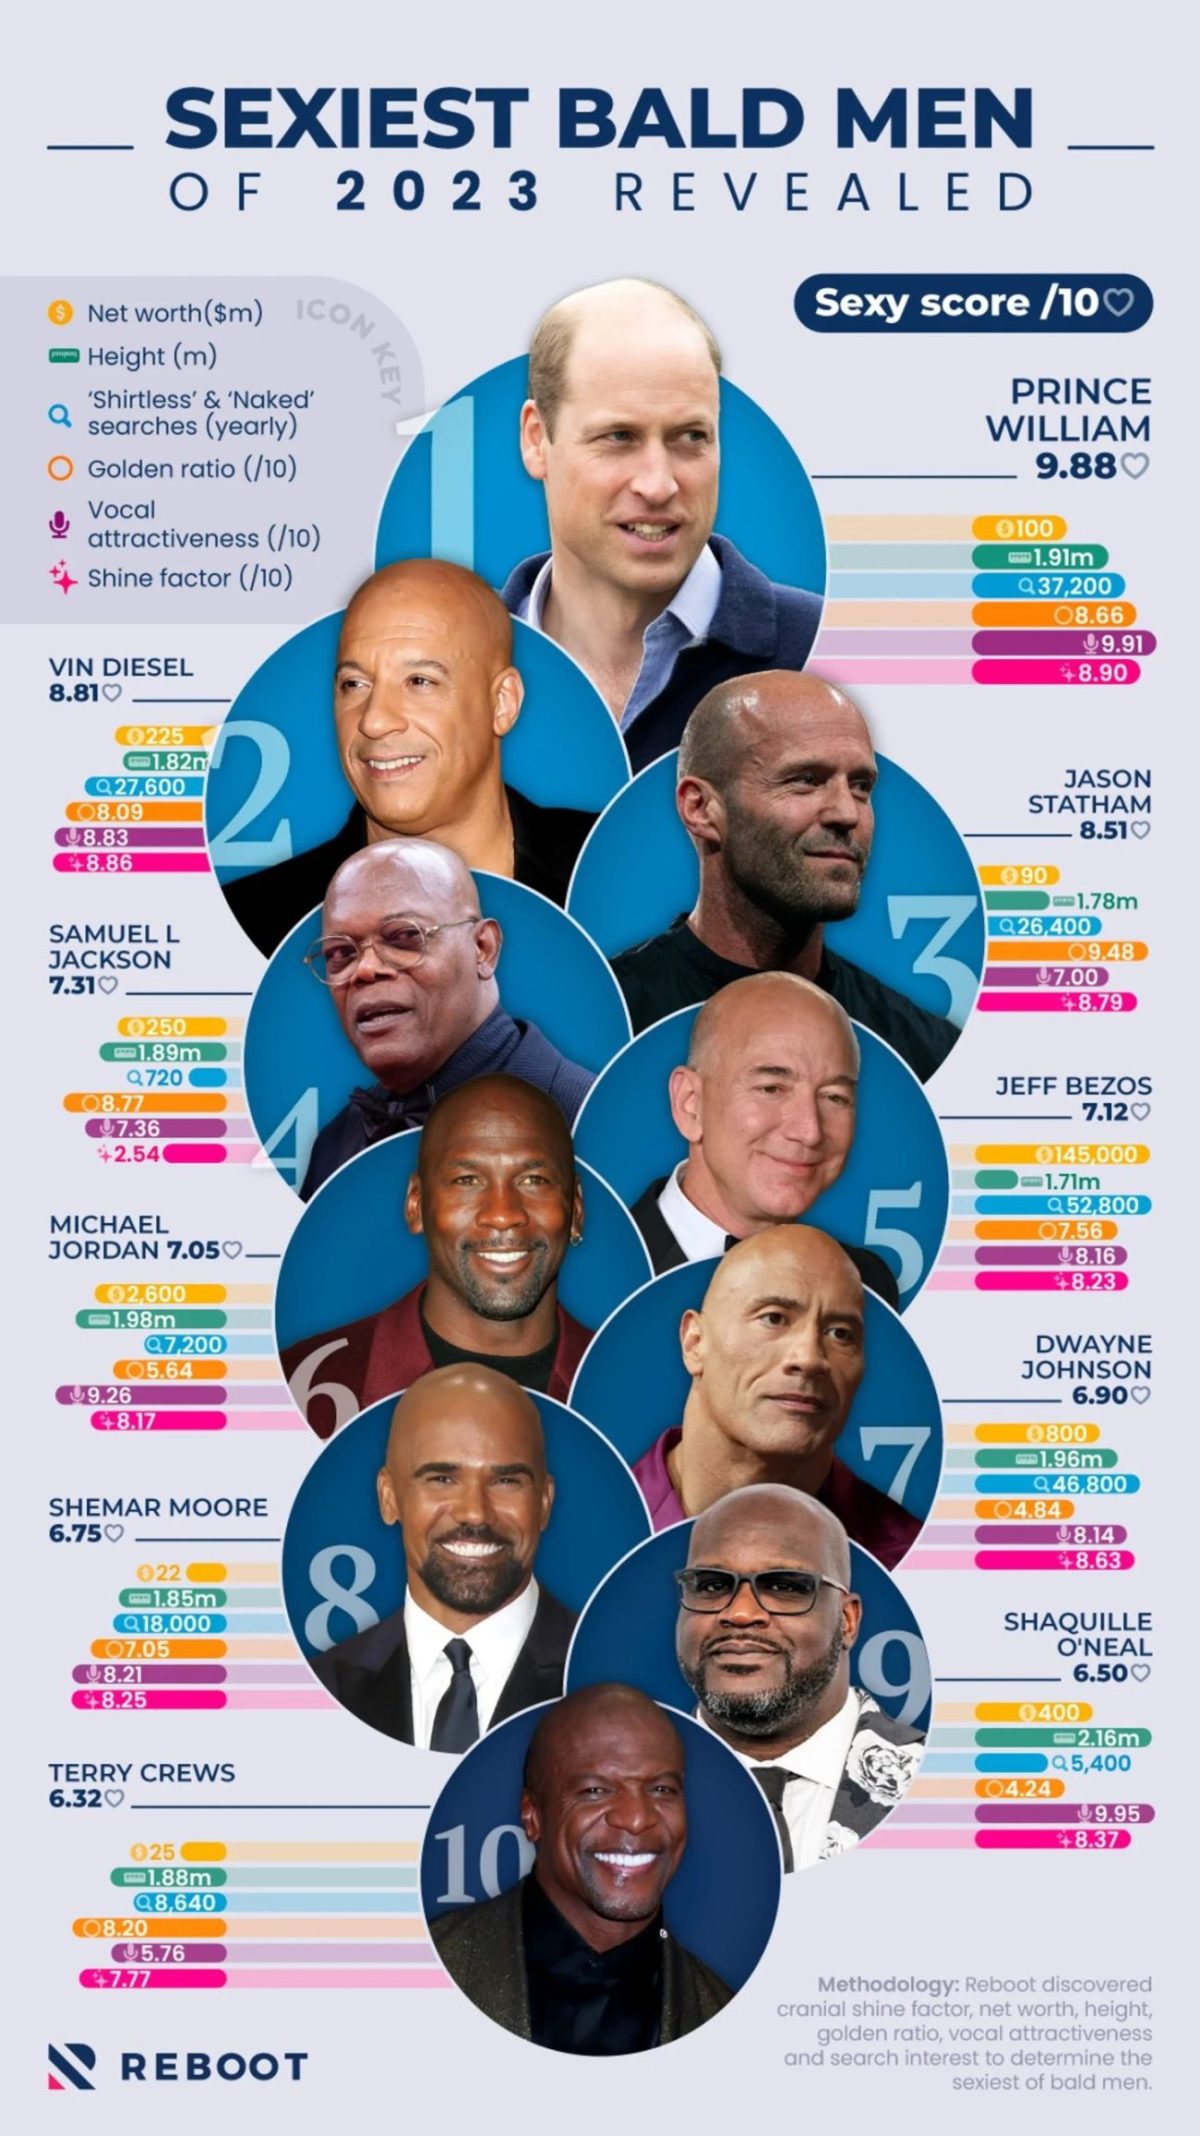 Sexiest bald men of 2023